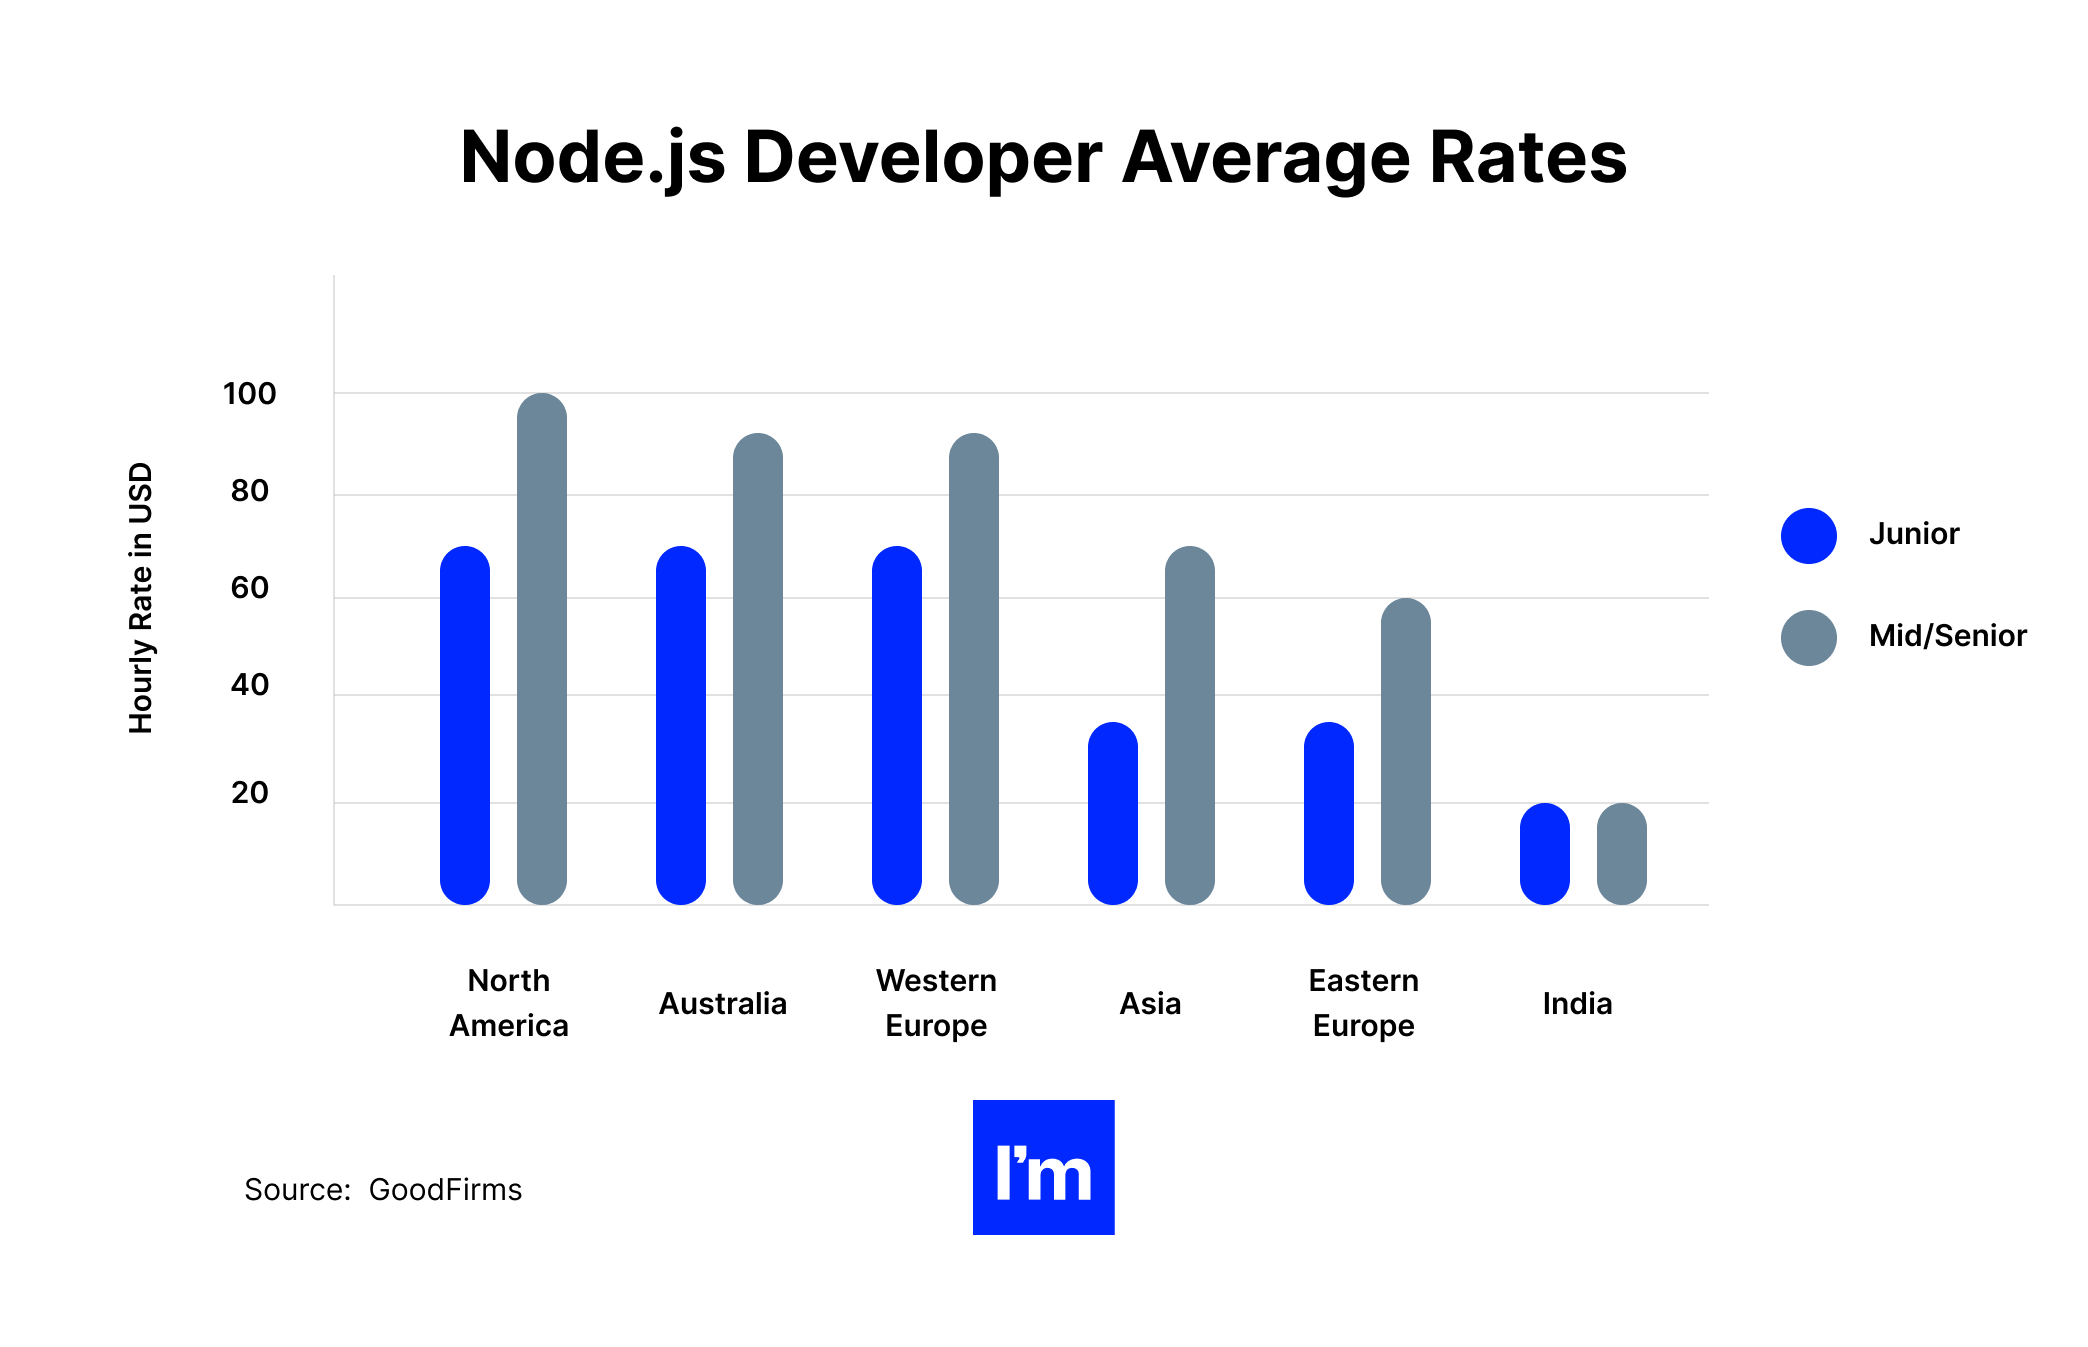 Node.js developer average rates